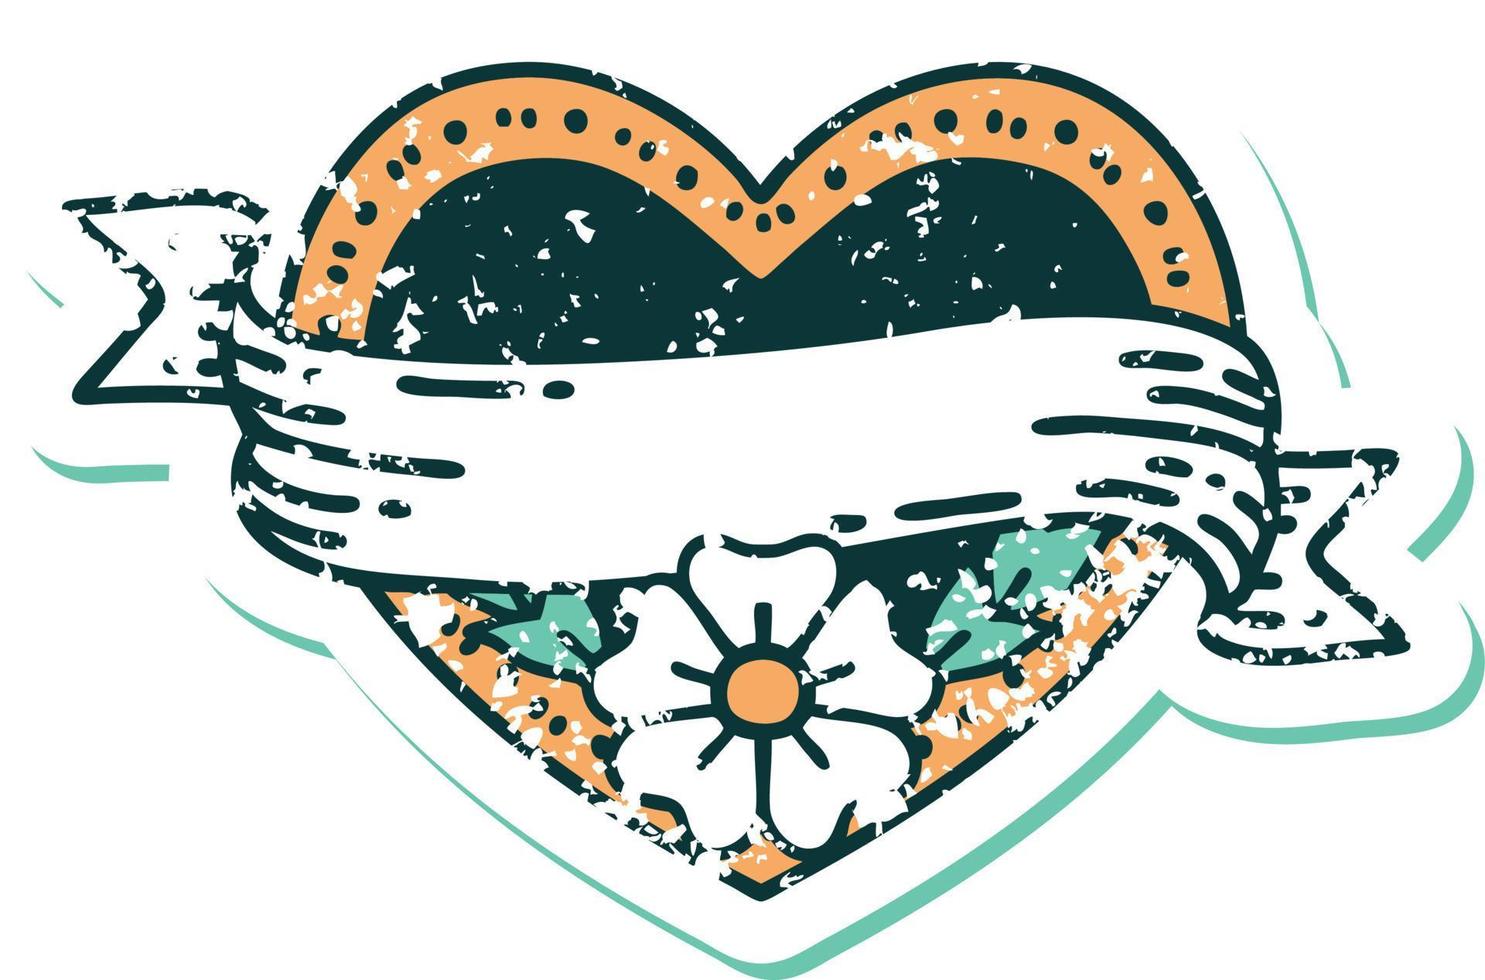 iconico afflitto etichetta tatuaggio stile Immagine di un' cuore e bandiera con fiori vettore